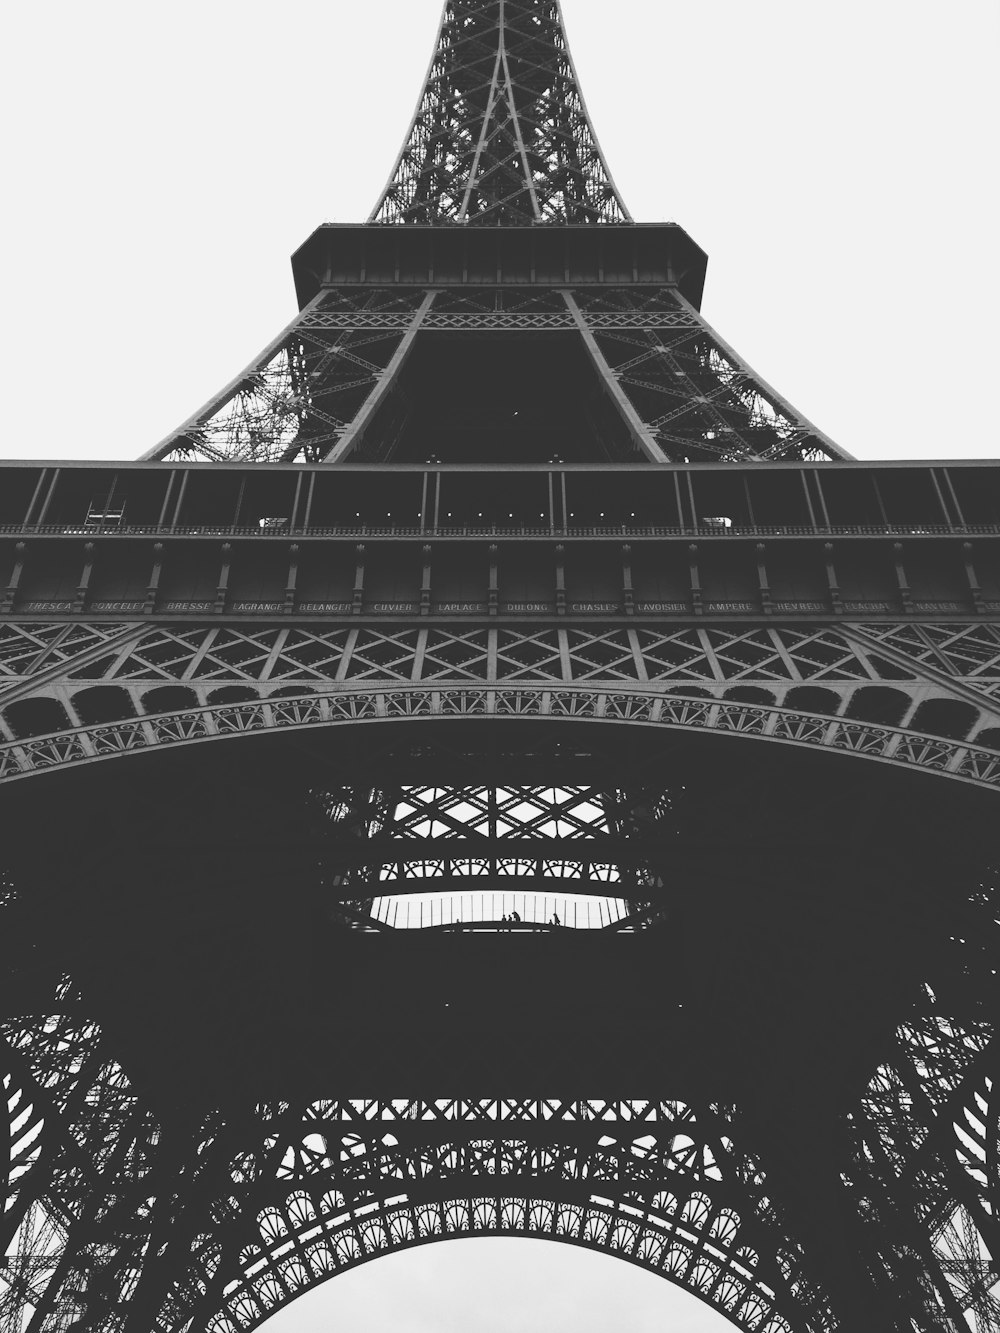 パリのエッフェル塔のグレースケール写真